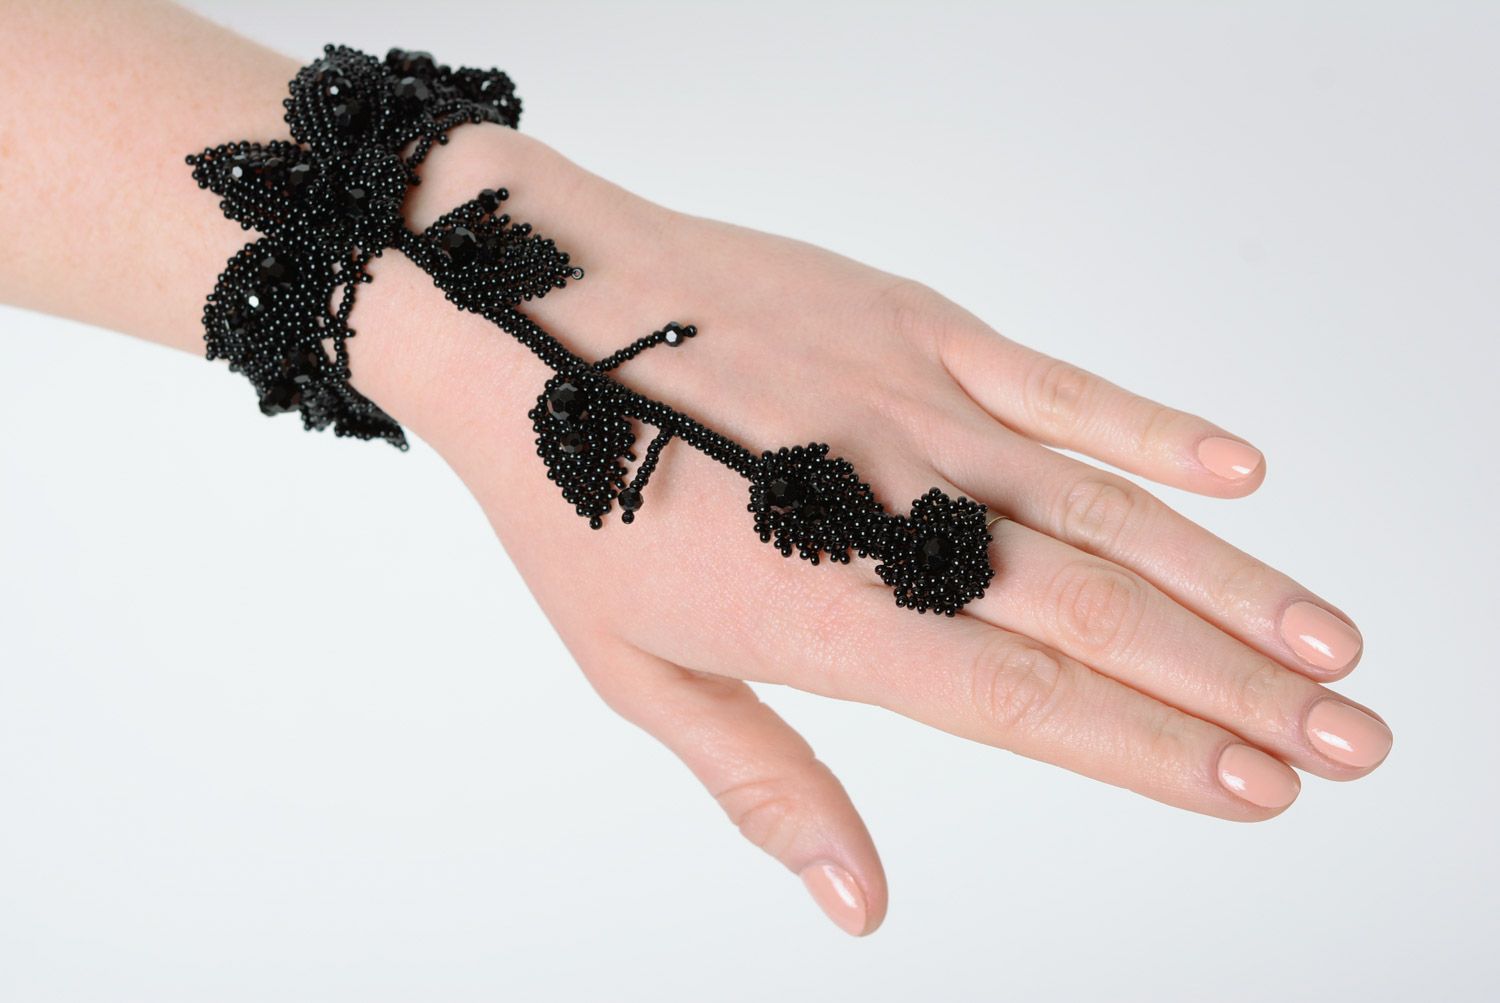 Handmade elegant designer slave bracelet woven of black beads with leaves photo 1